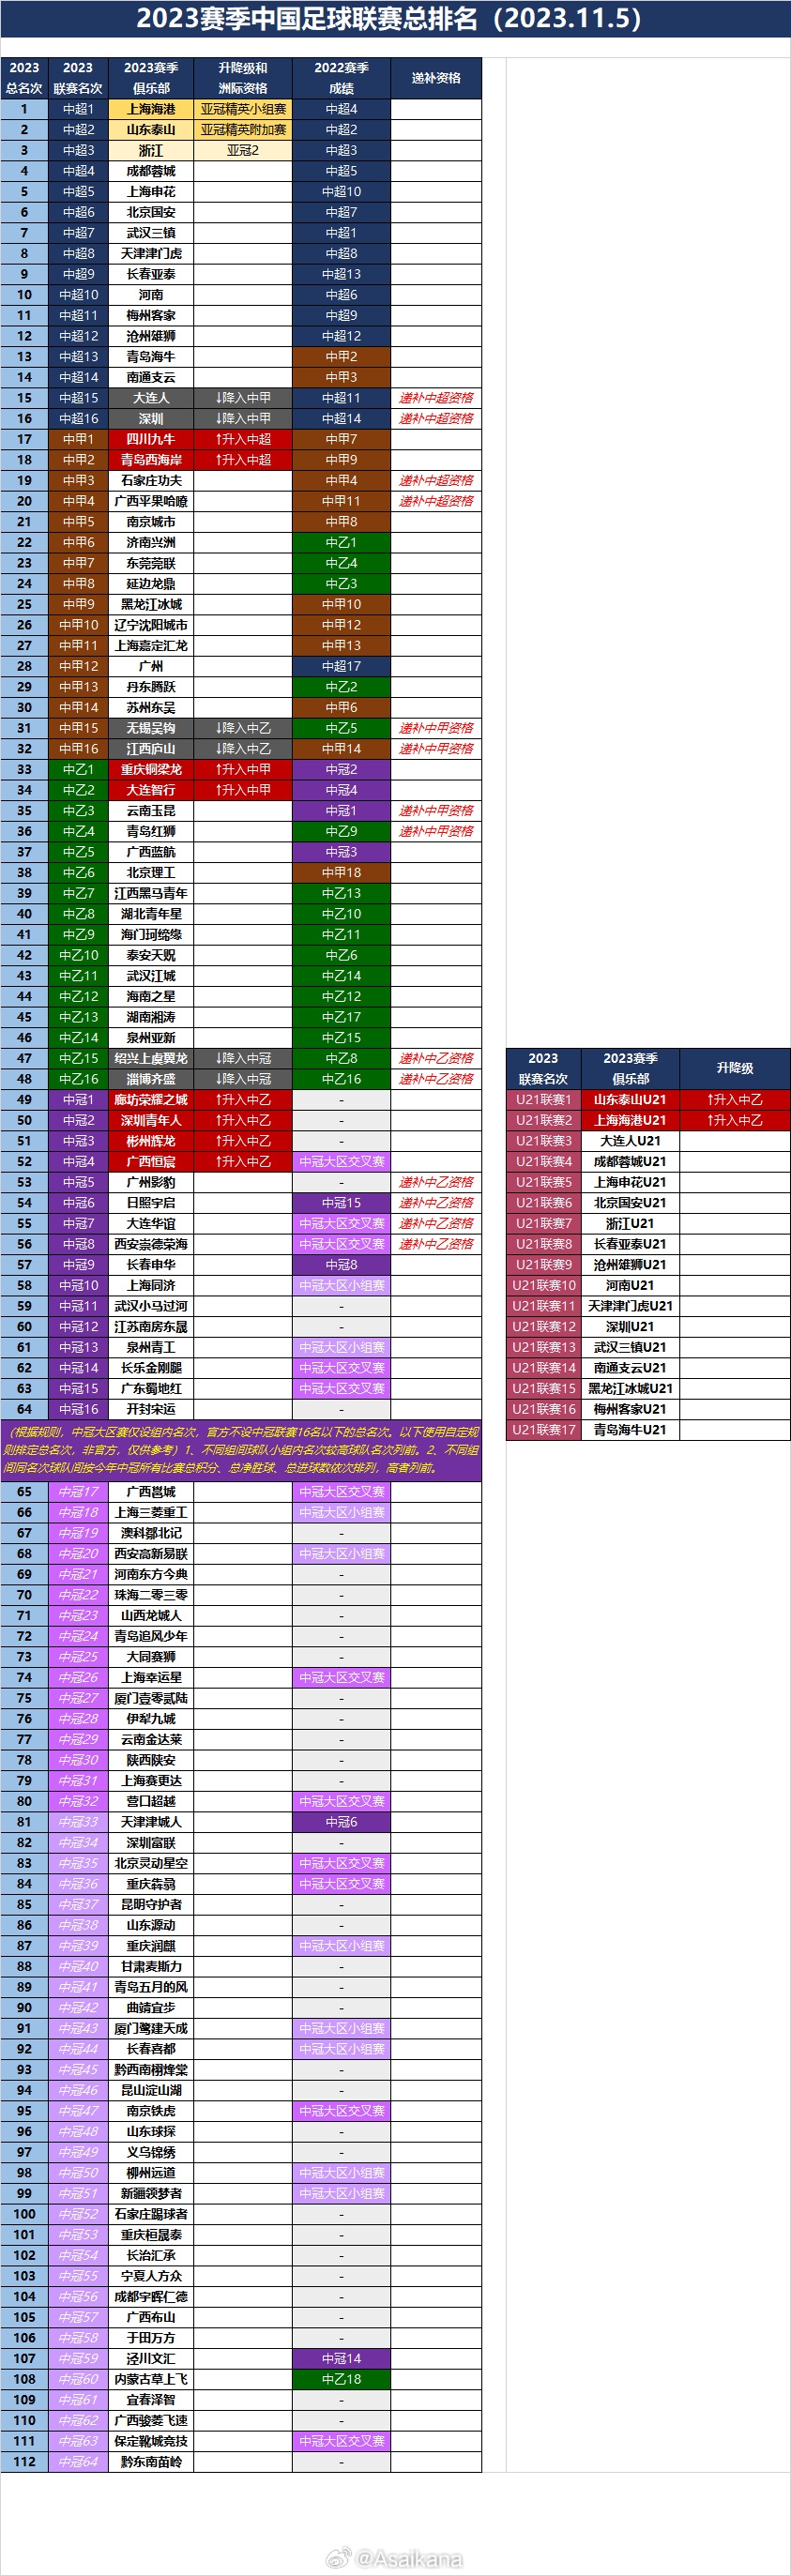 2023赛季中国足球联赛总排名2023.11.5全部排名出炉